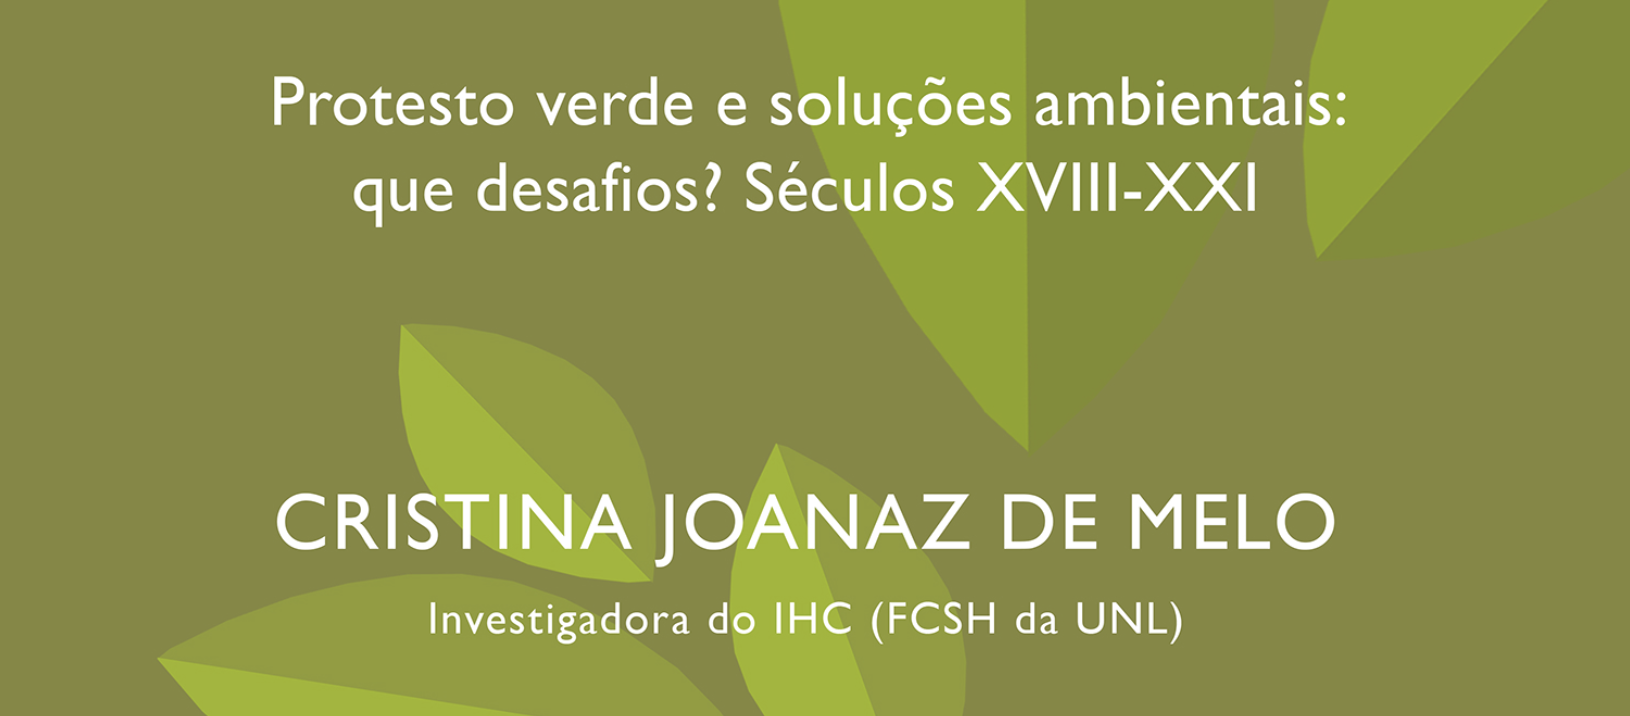 Conference by Cristina Joanaz de Melo: Protesto verde e soluções ambientais: que desafios? Séculos XVIII-XXI